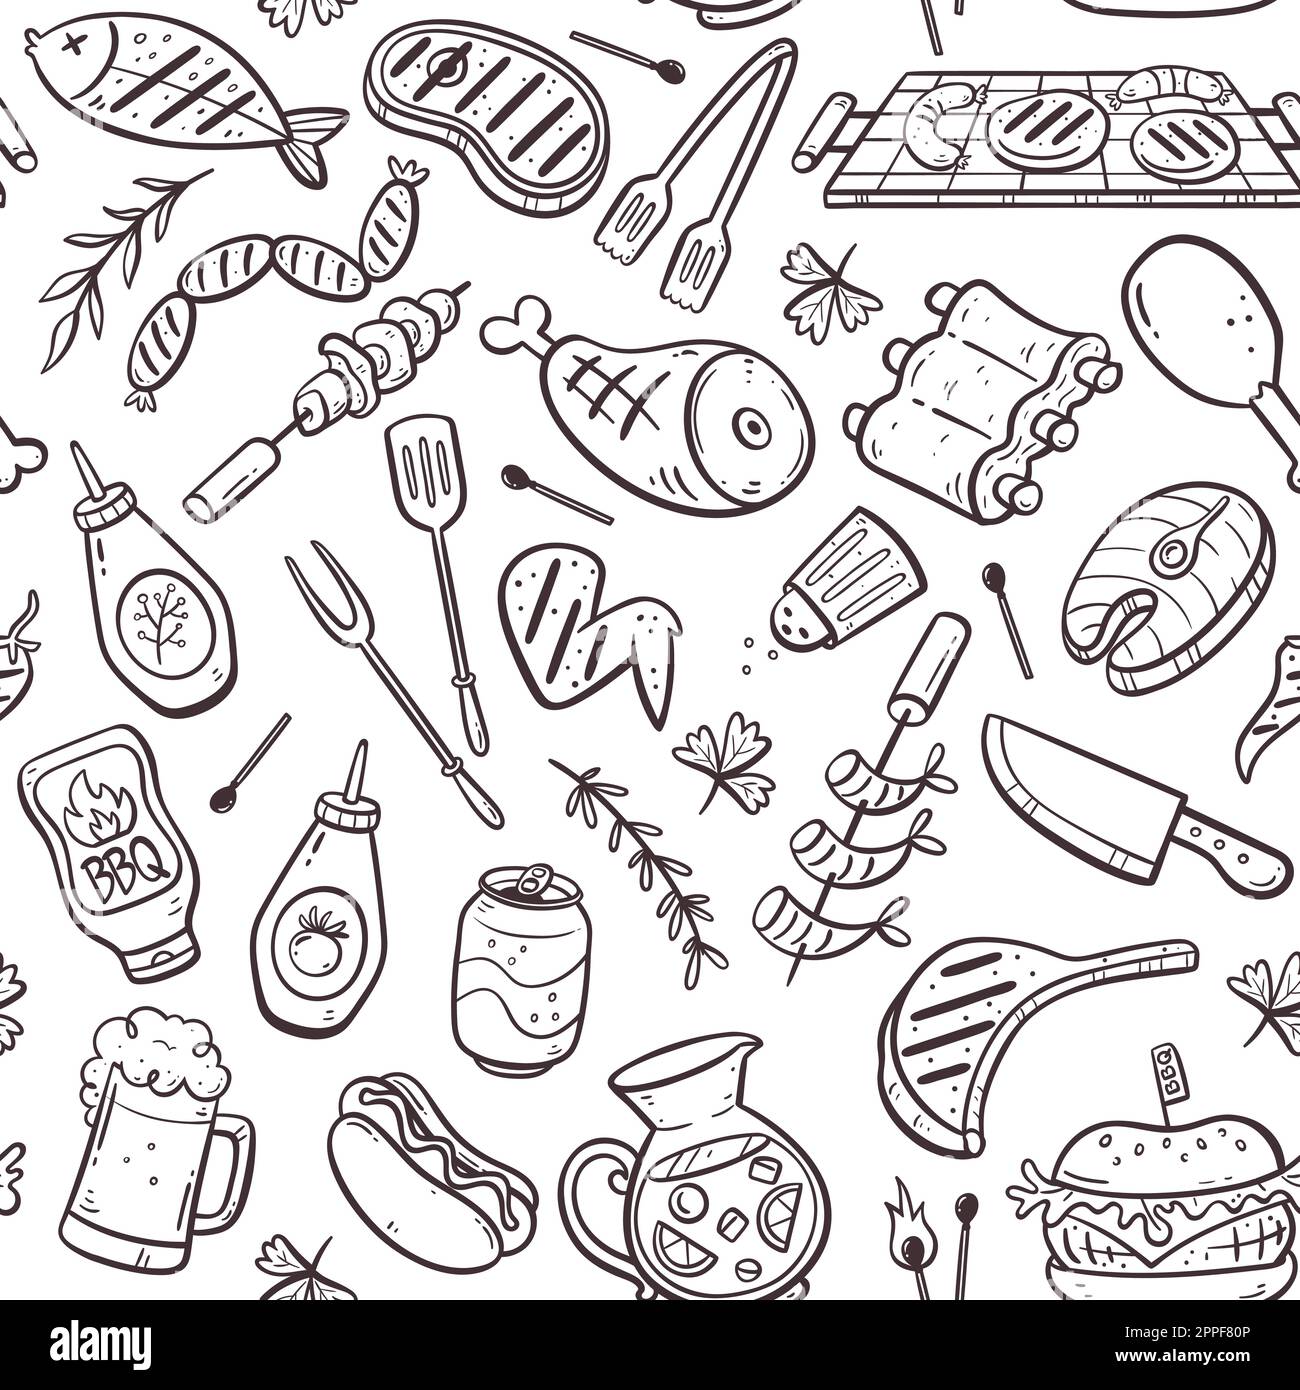 Nahtlose Grillparty mit Fleisch, Burgern, Würstchen und Barbecue-Utensilien. Isolierte Doodle-Elemente auf weißem Hintergrund. Handgezeichnete Vektor-Il Stock Vektor